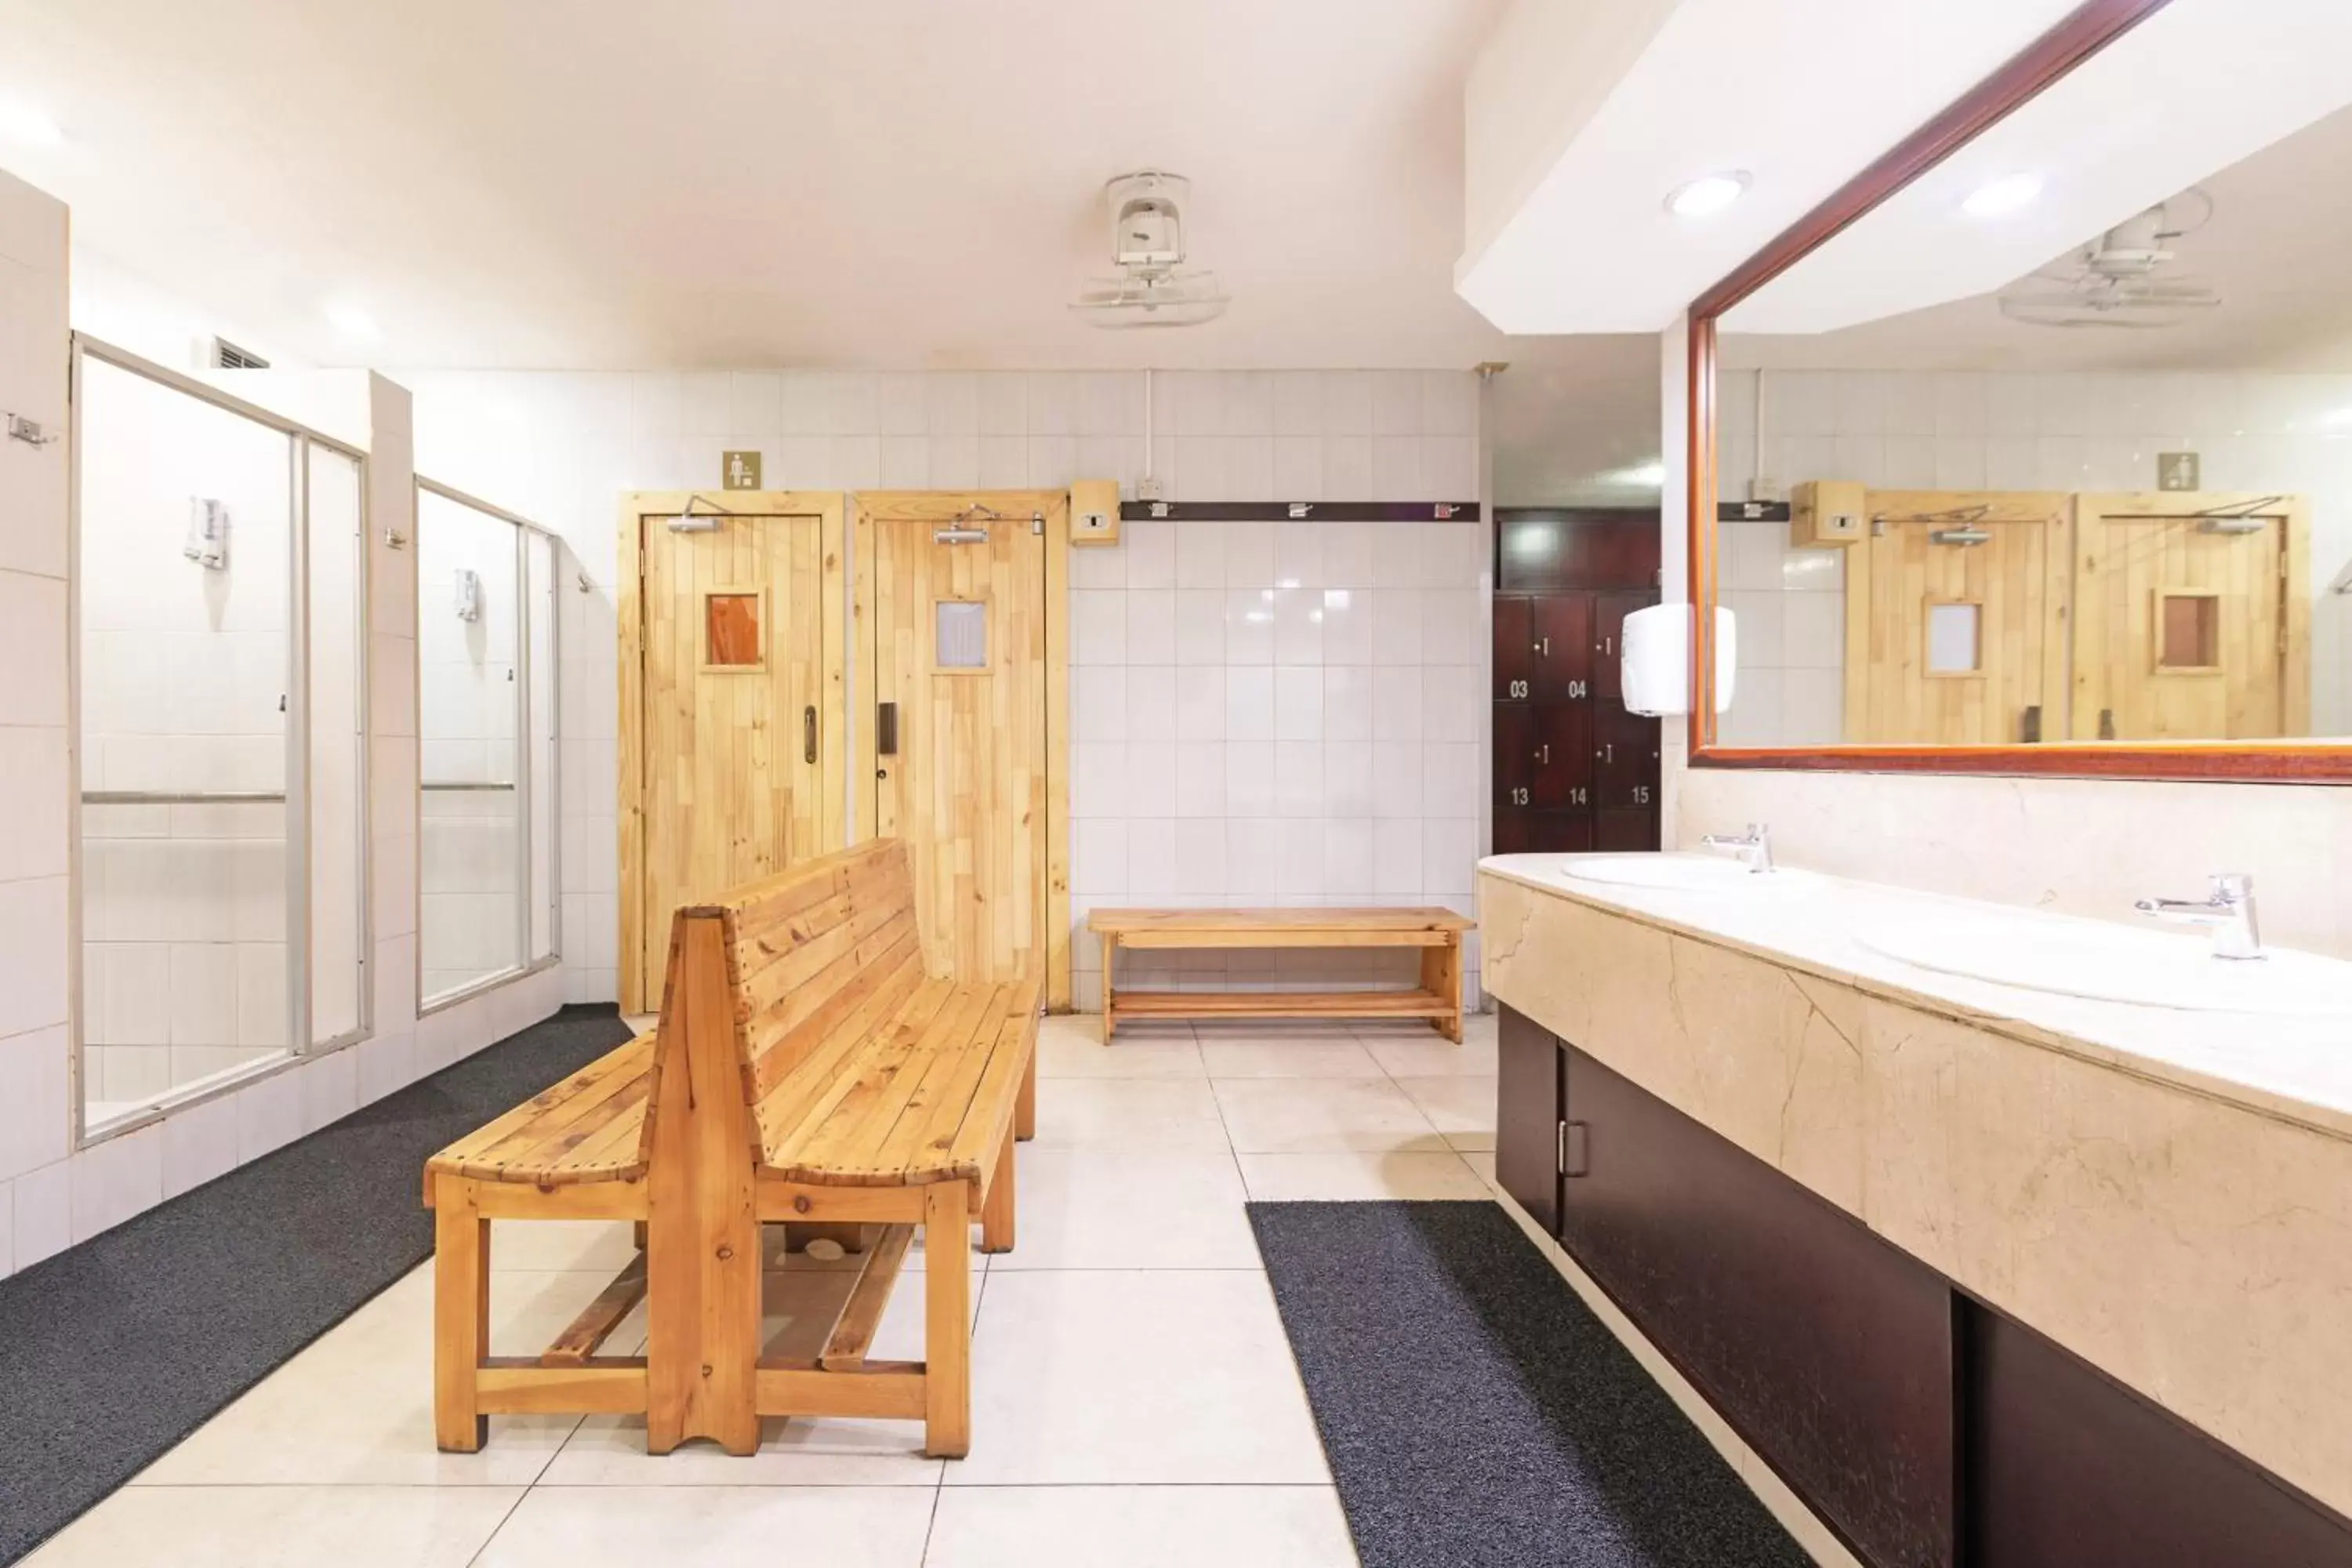 Area and facilities, Bathroom in Barceló San José